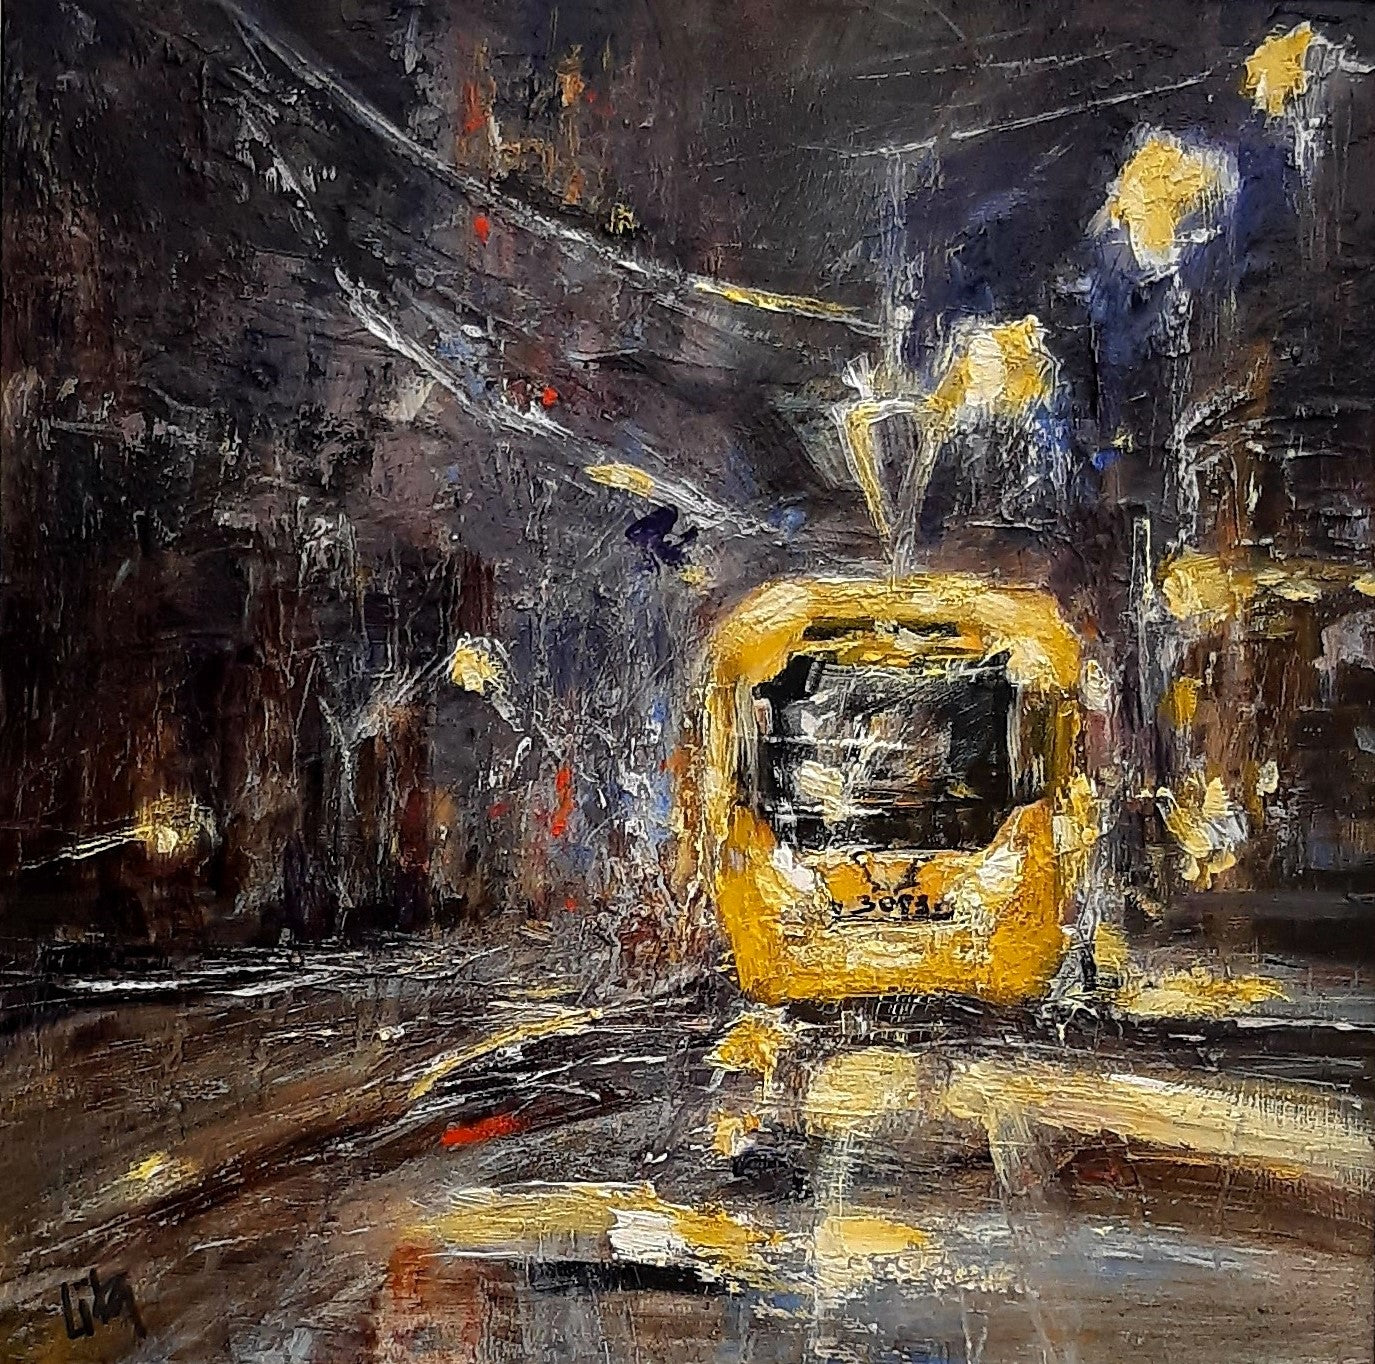 Manchester Tram by Lita Narayan